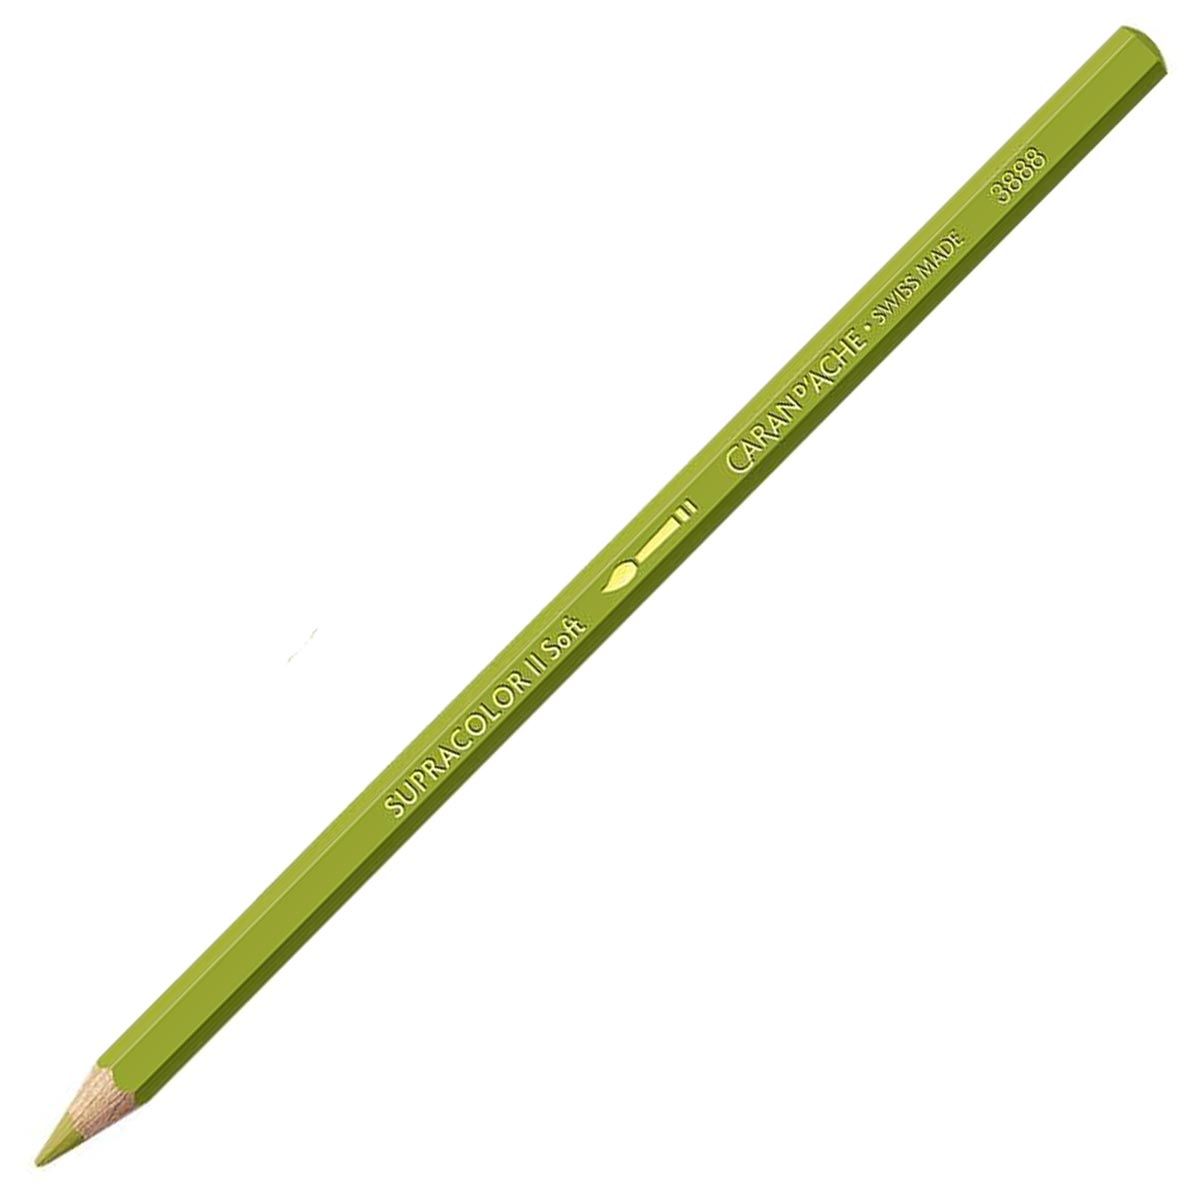 Caran d'Ache Supracolor ll Soft Aquarelle Pencil - Khaki Green 016